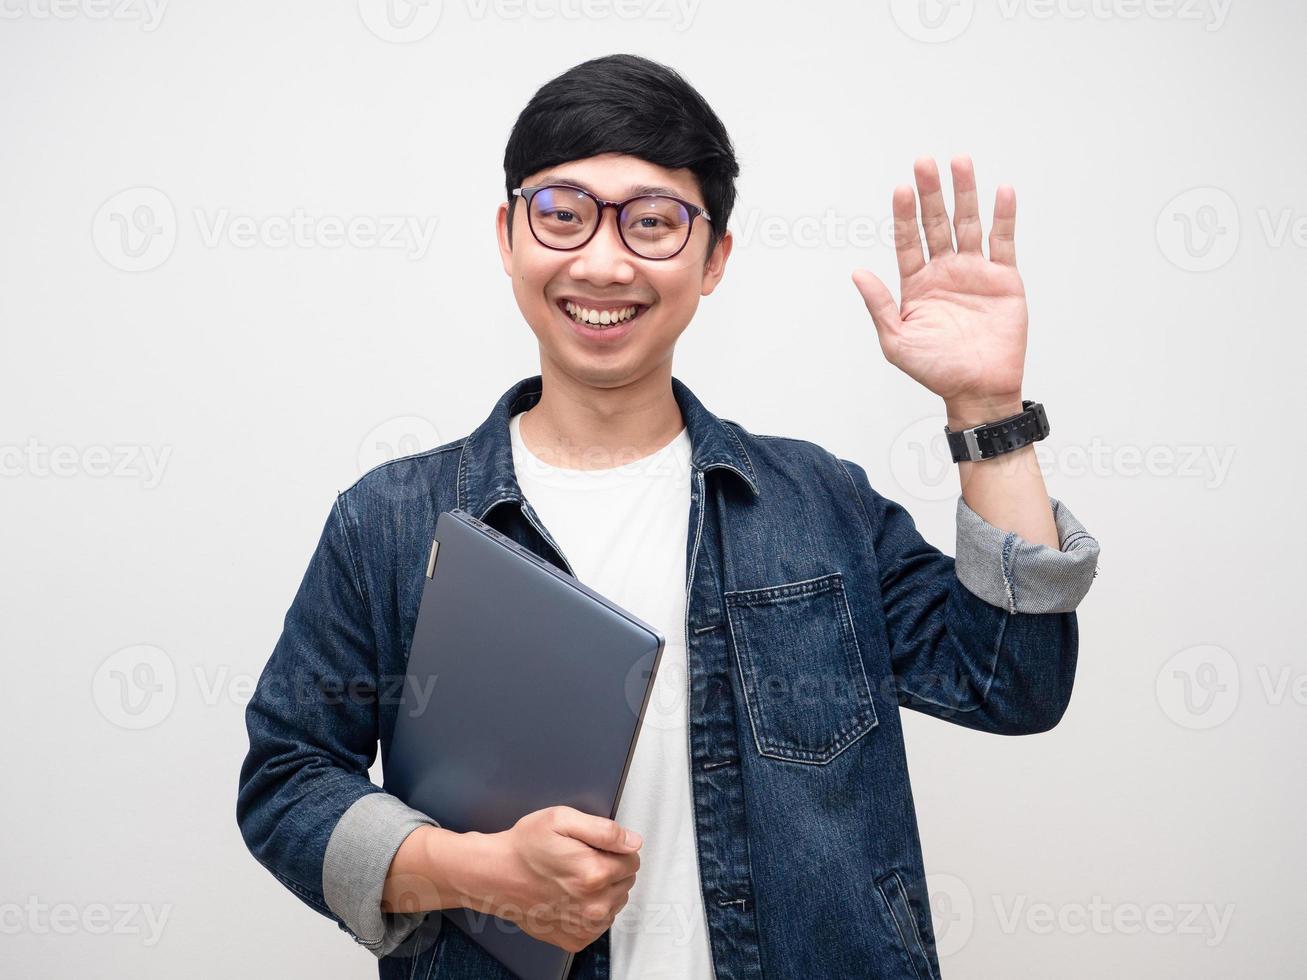 jovem de óculos segurando laptop sorriso gentil gesto cumprimentar isolado foto